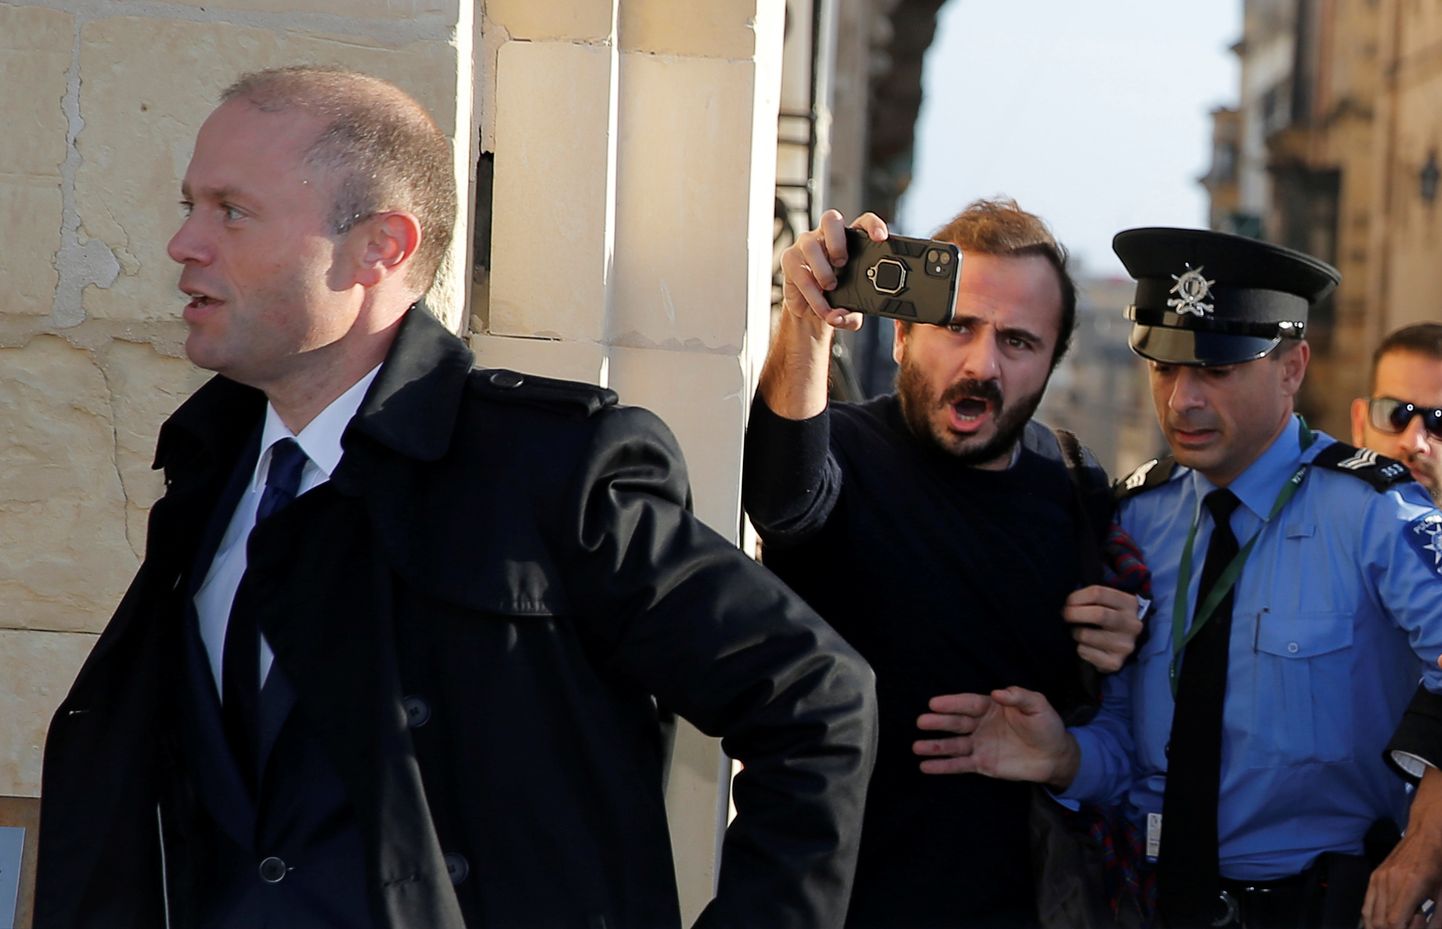 Malta peaminister Joseph Muscat politsei saatel kohtumisele suundumas.